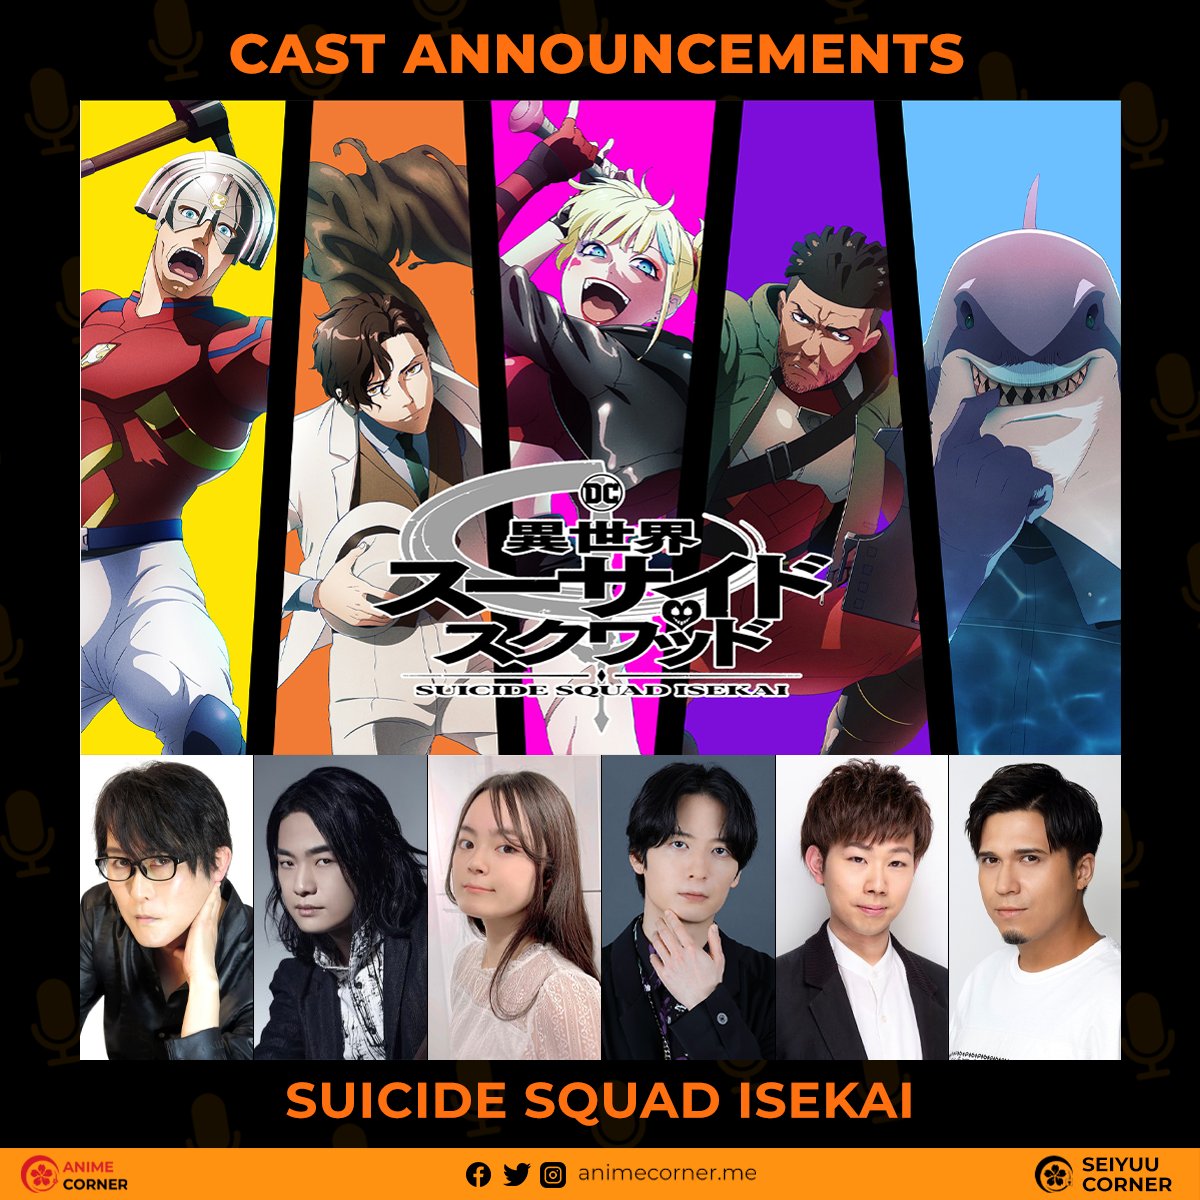 Suicide Squad ISEKAI, Announcement